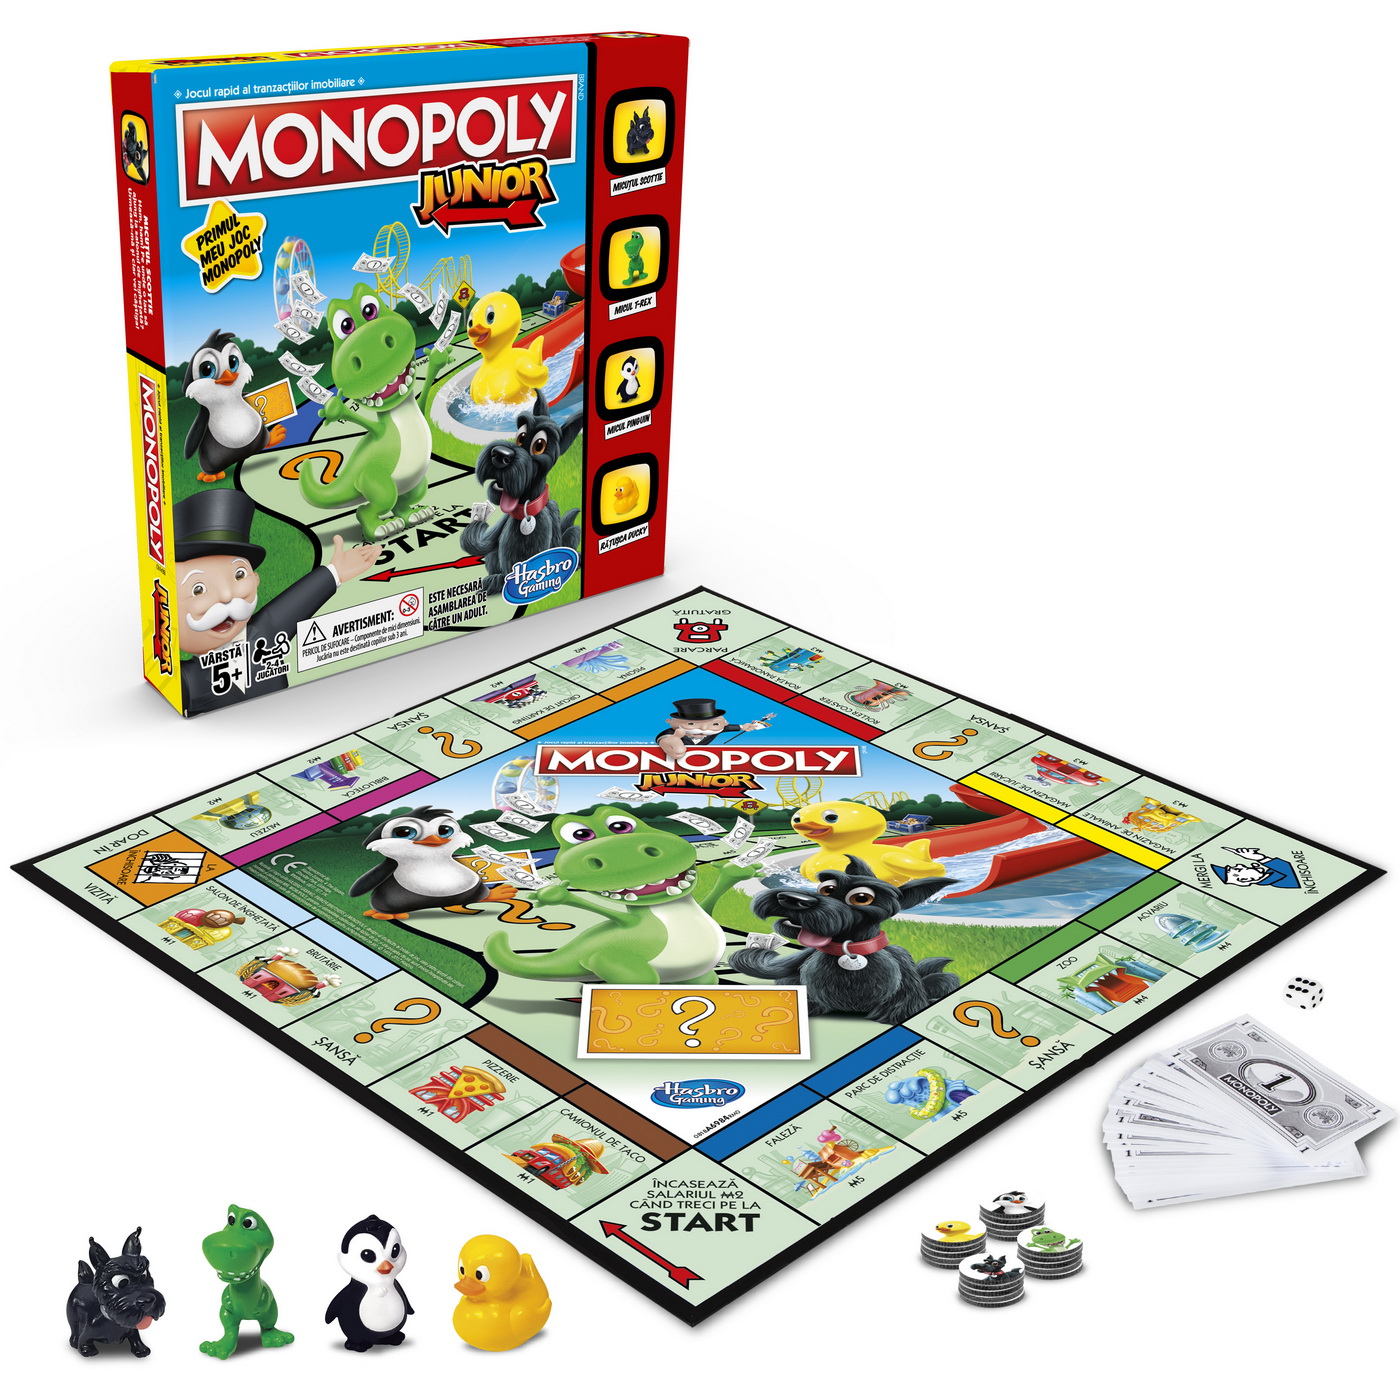 Monopoly copii junior cu pioni animalute limba romana